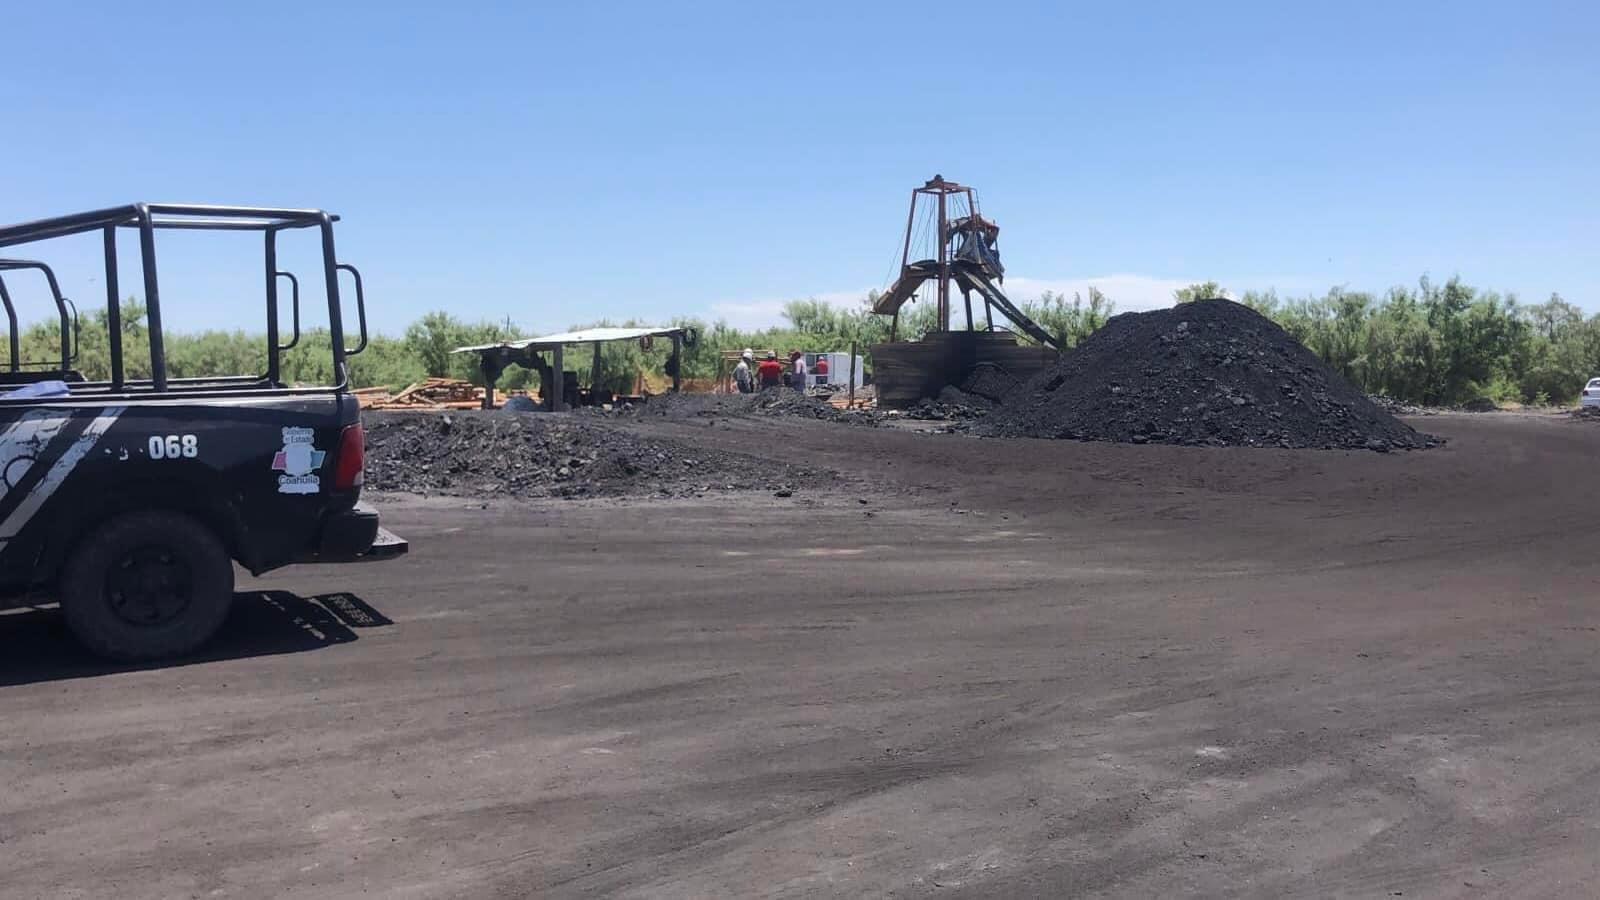 Mineros quedan atrapados tras derrumbe de un pozo de carbón en Sabinas, Coahuila; rescatan a 3 de ellos